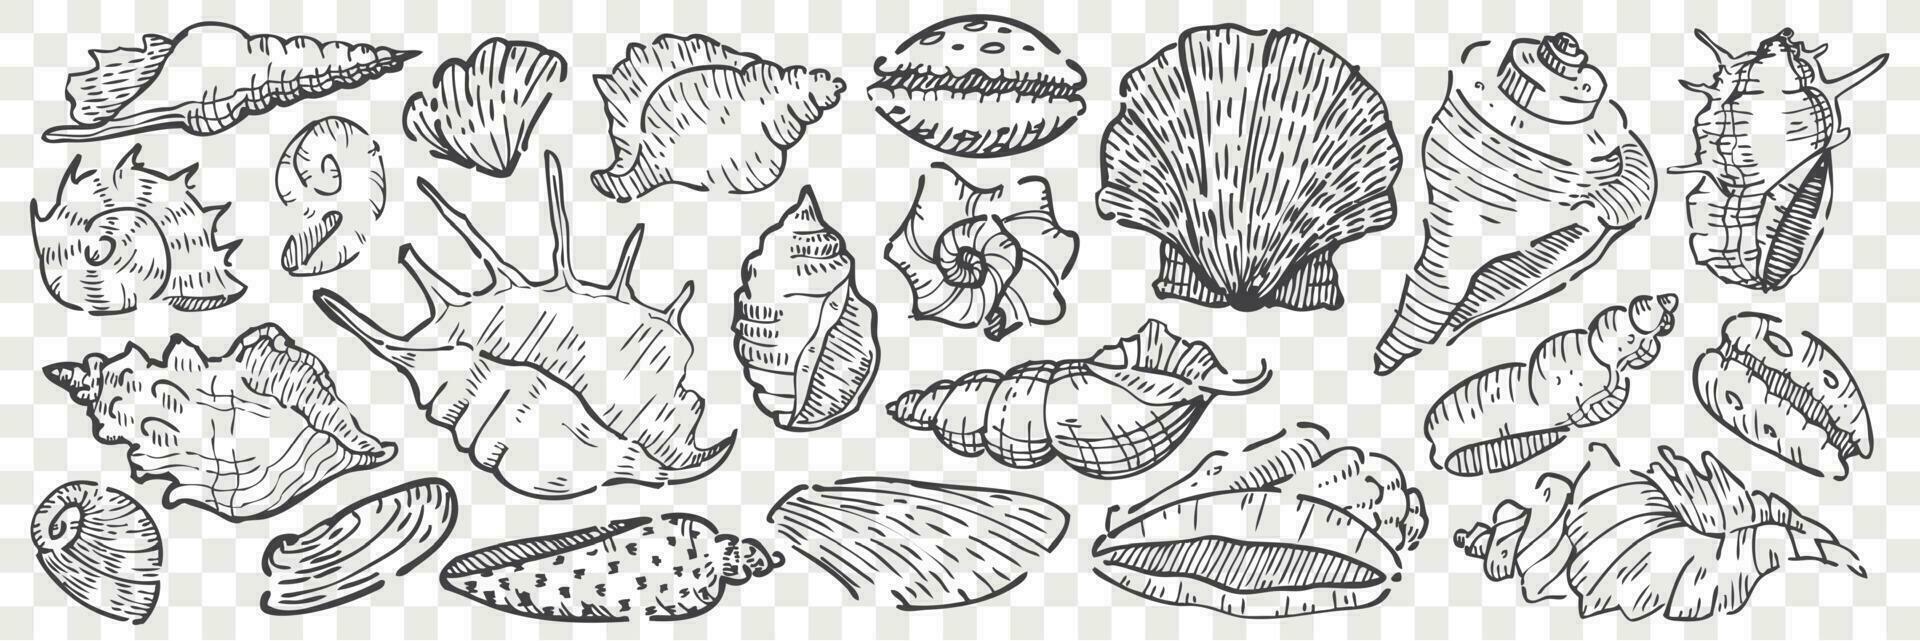 Hand drawn seashells doodle set. vector